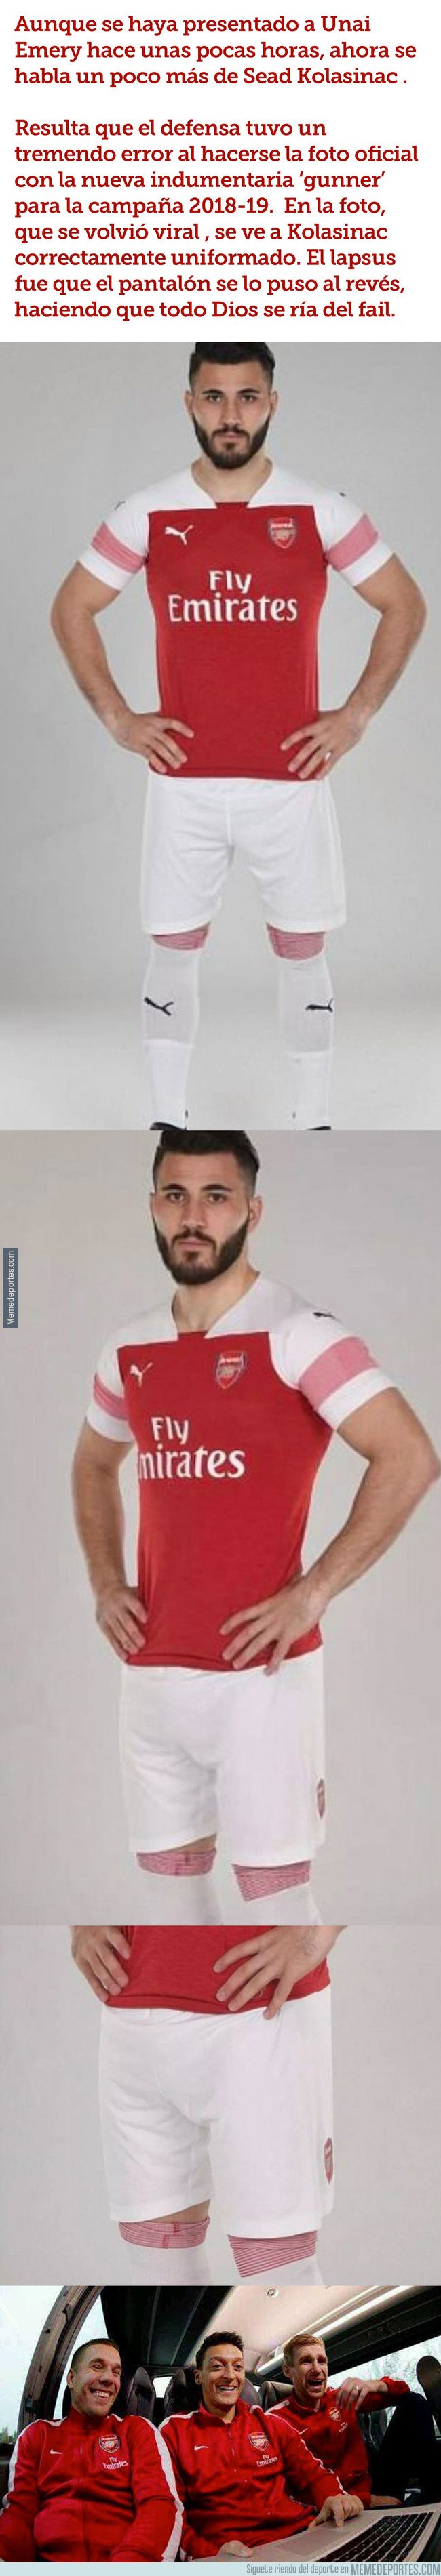 1034908 - Jugador del Arsenal la lía y no se da cuenta del fail en su foto oficial 2018/19